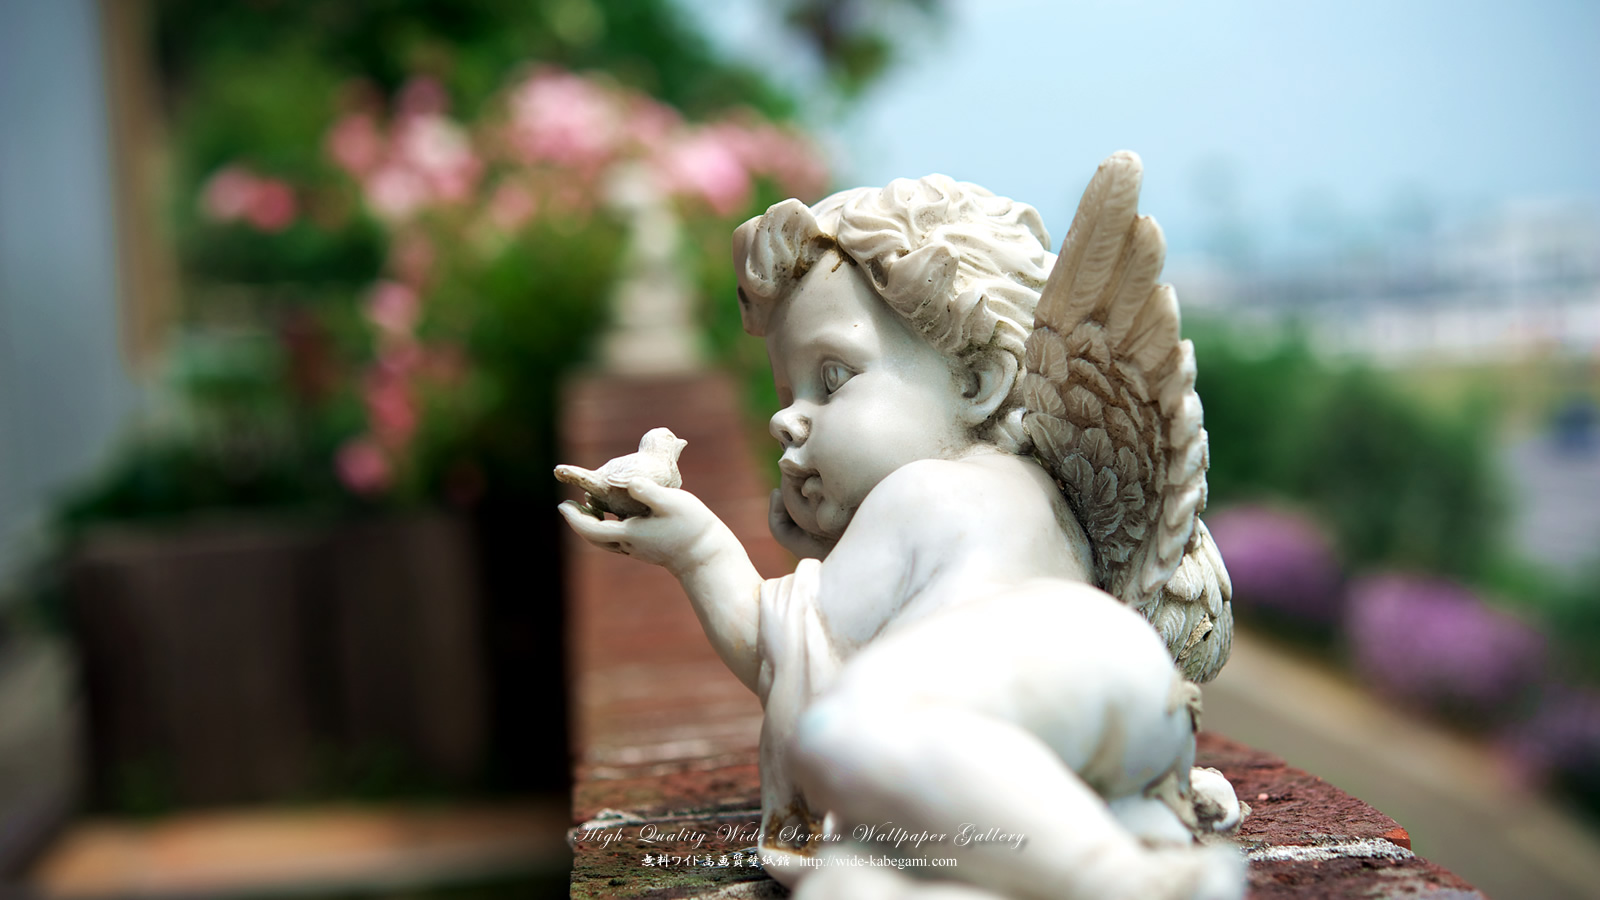 ワイド壁紙(16:9-1600x900)－バラ園の天使像